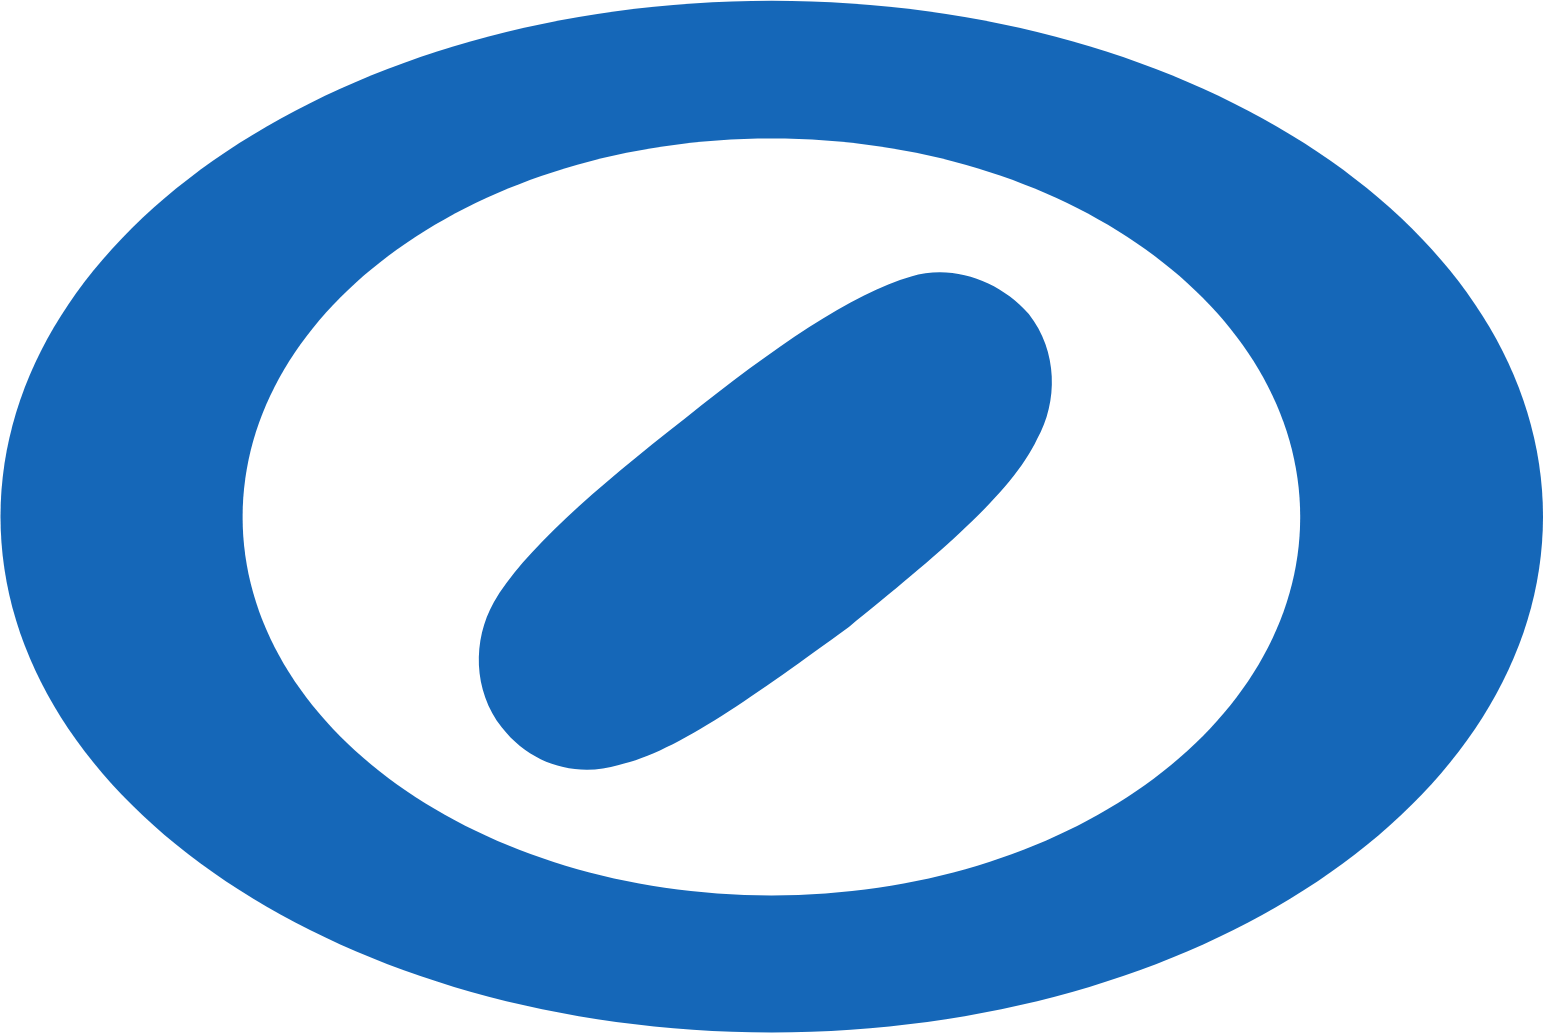 Shimizu Corporation logo (transparent PNG)